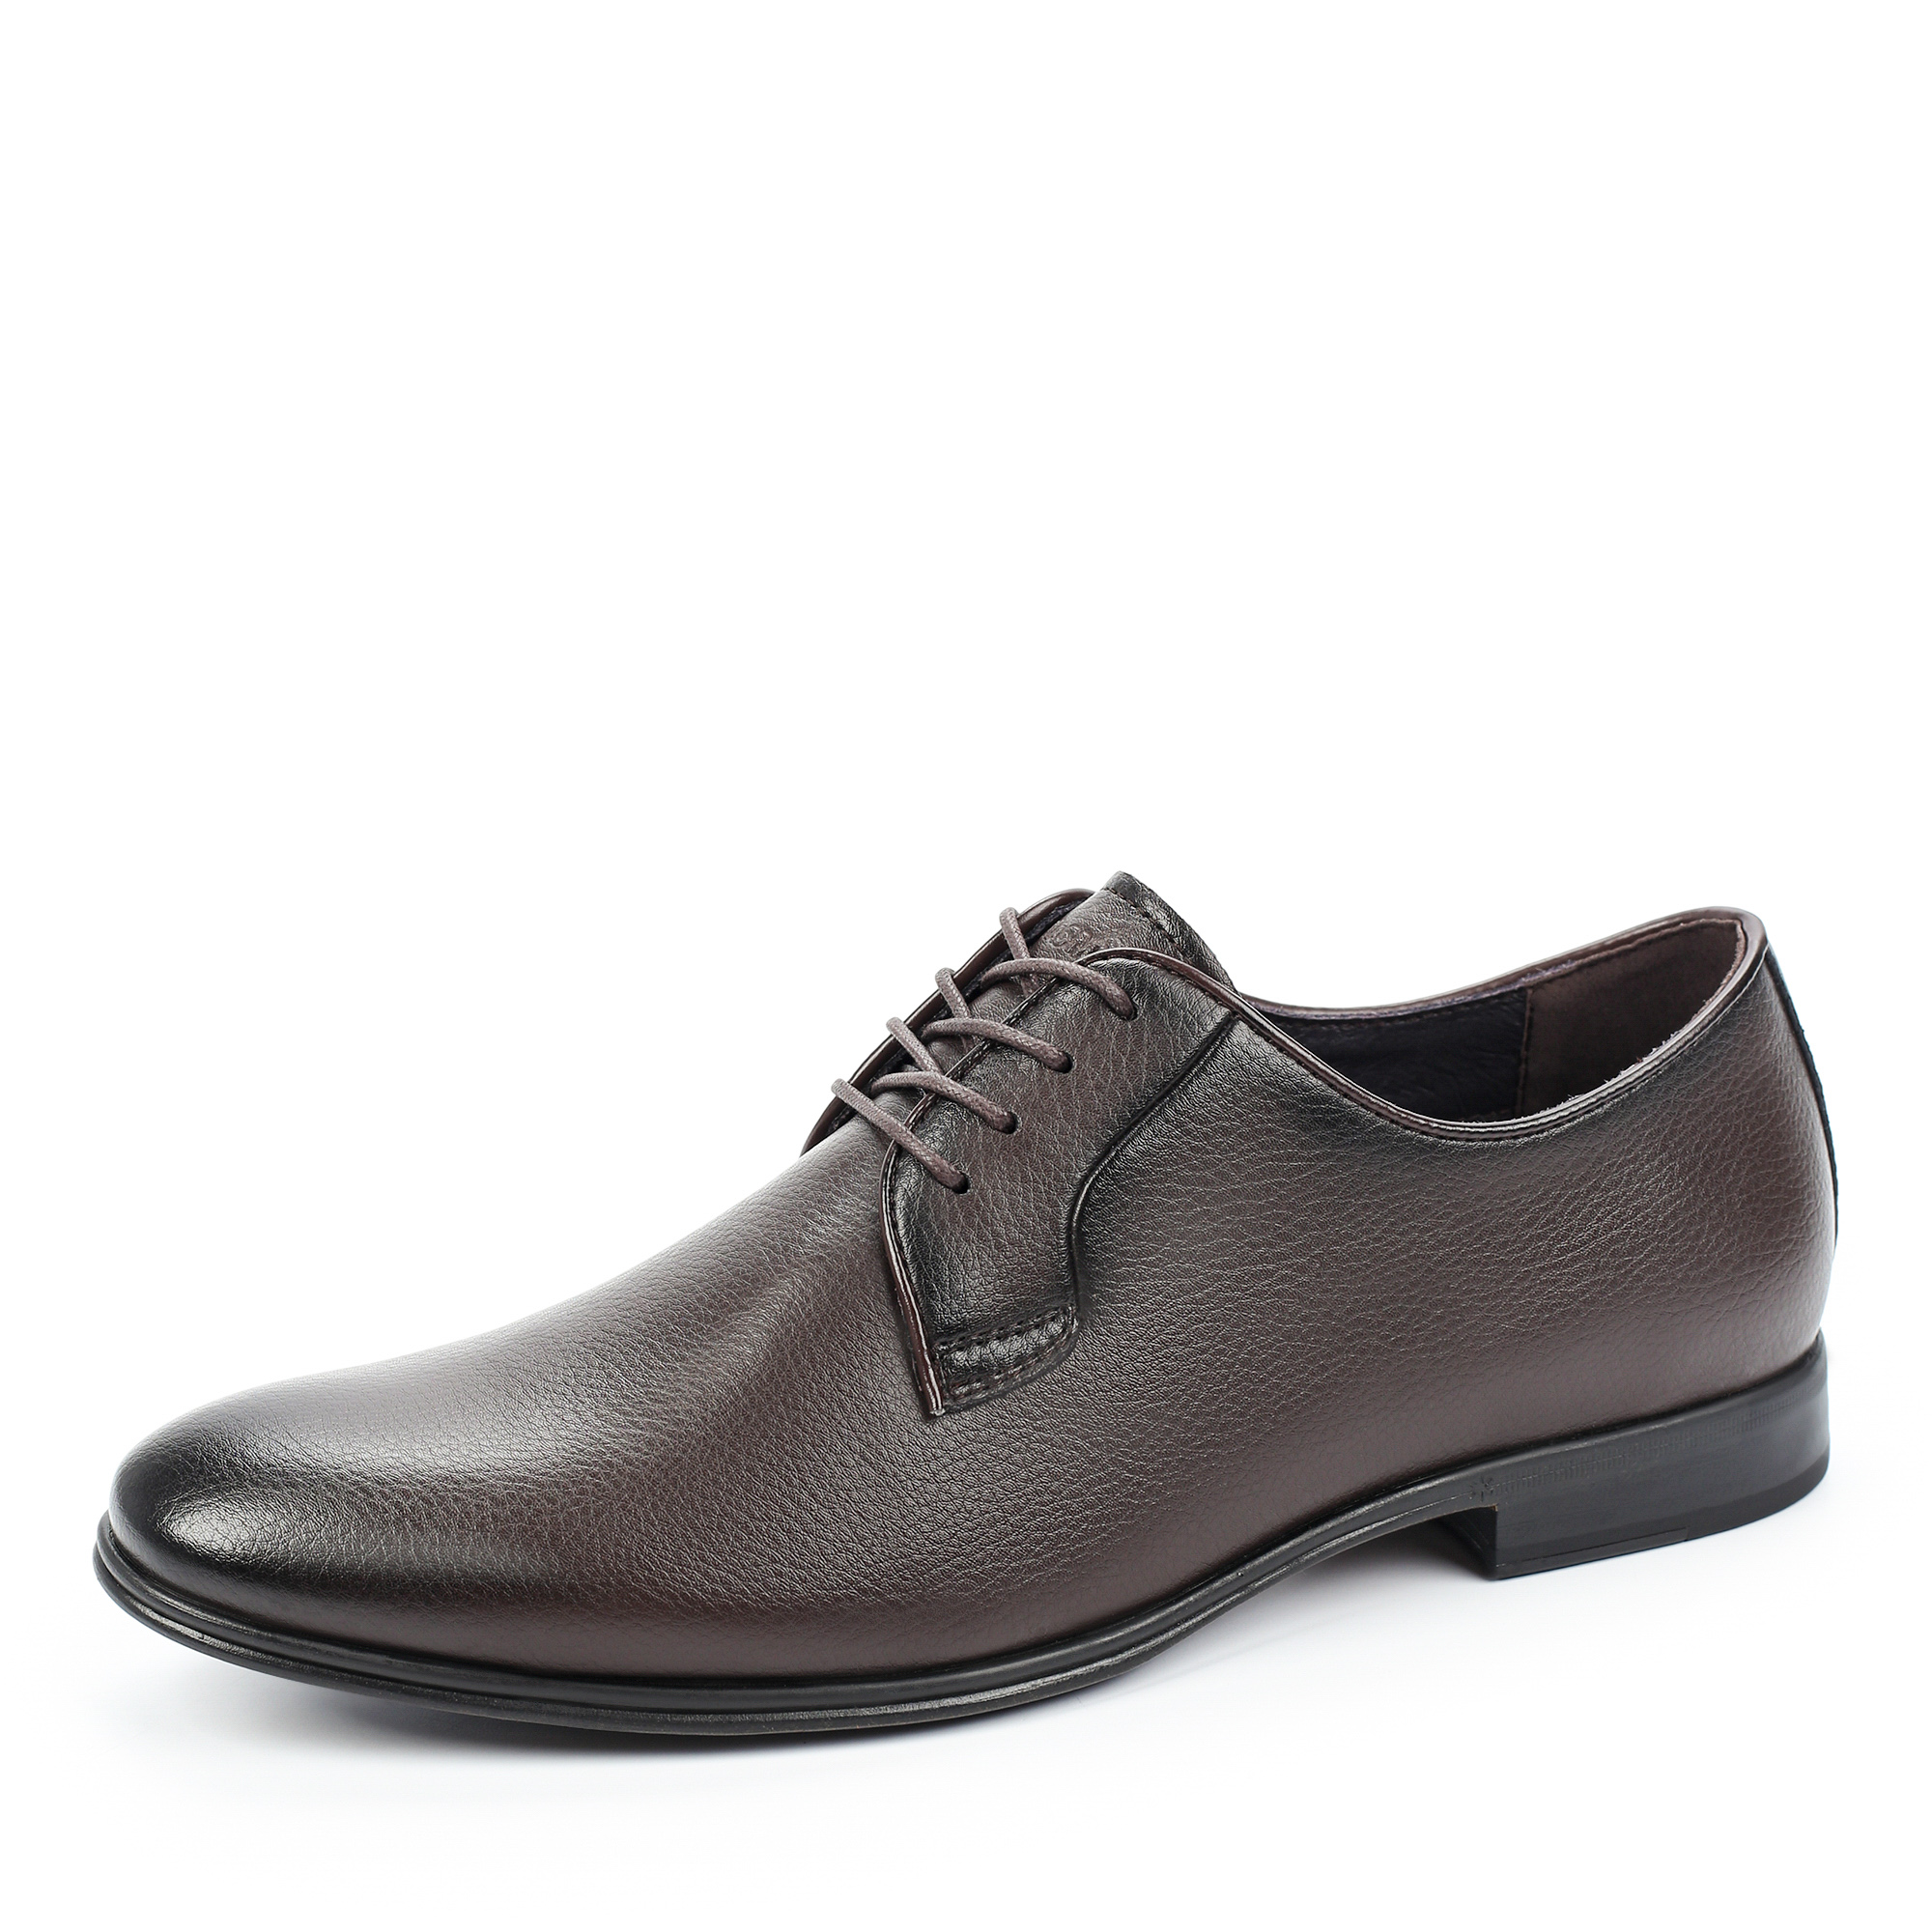 Туфли/полуботинки Thomas Munz 073-747A-2109, цвет темно-коричневый, размер 42 - фото 2